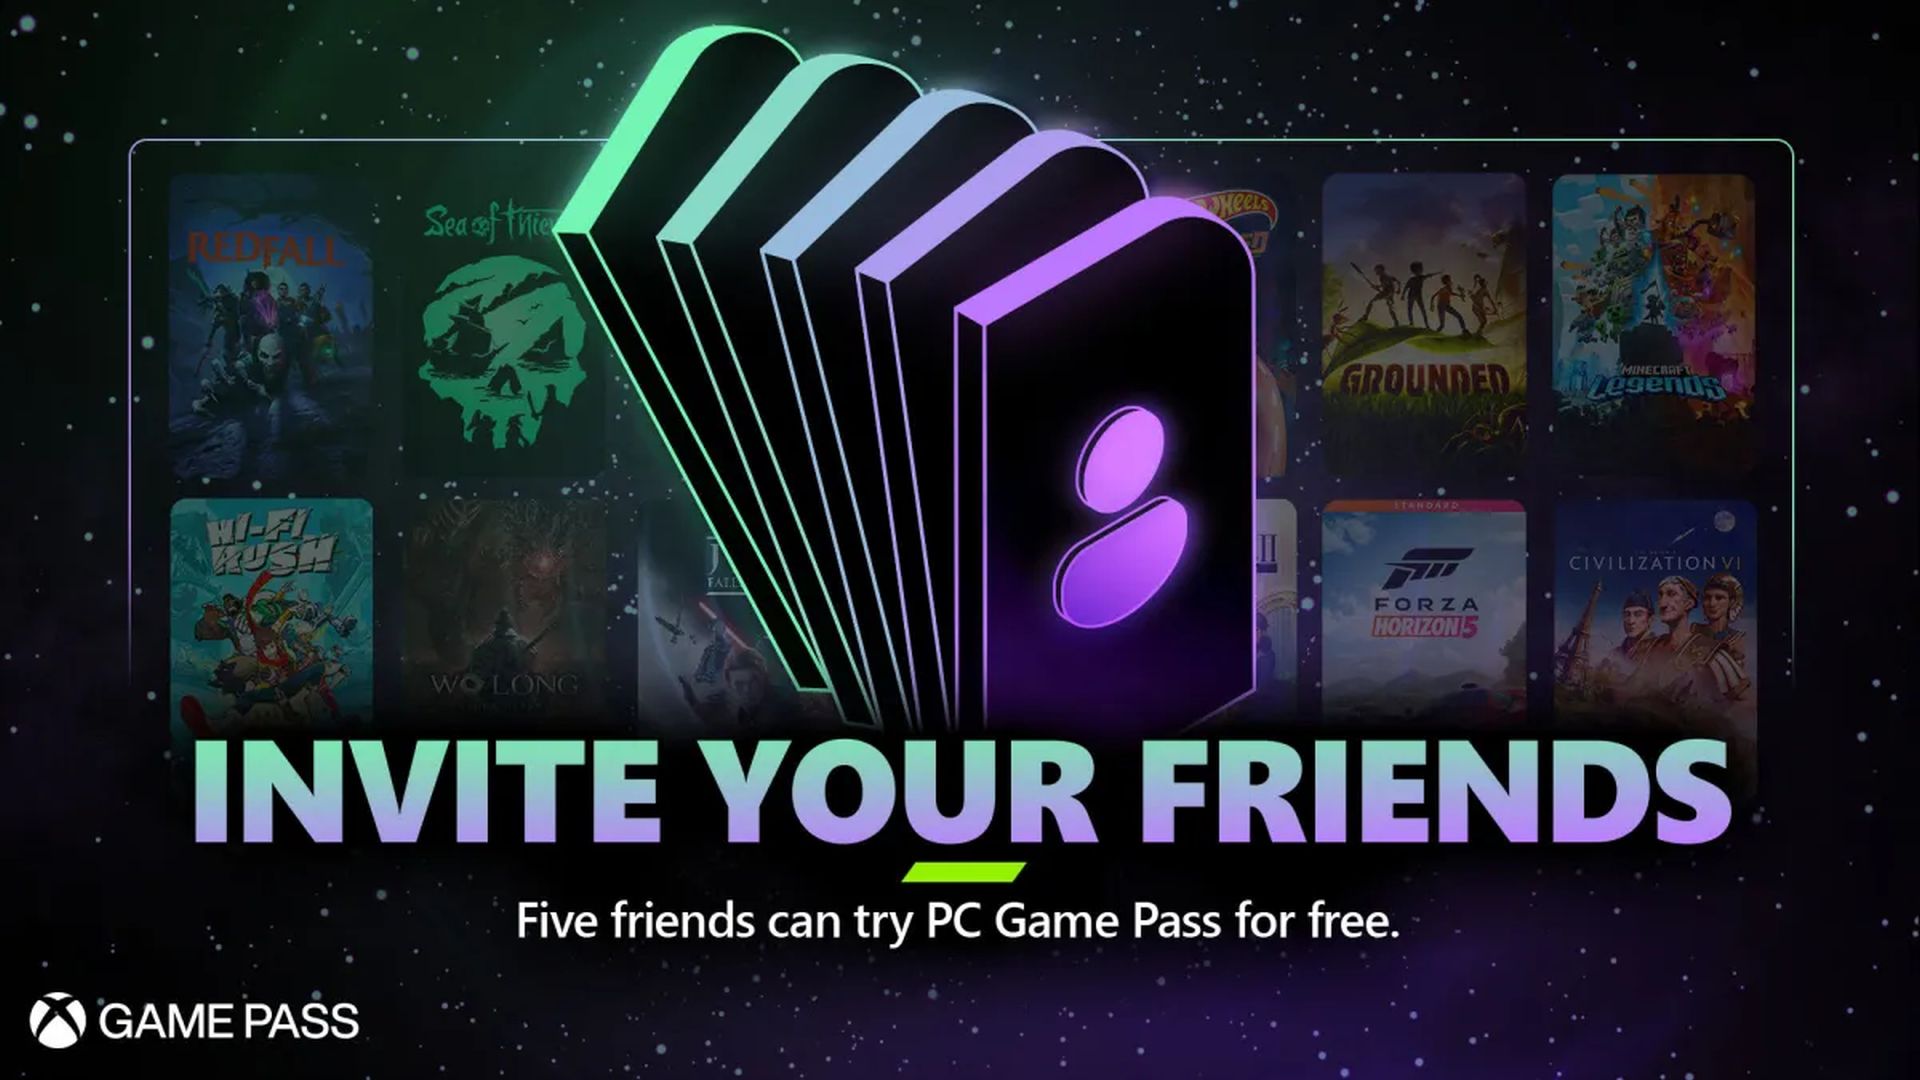 ایکس باکس از سیستم معرفی دوستان برای PC Game Pass رونمایی کرد